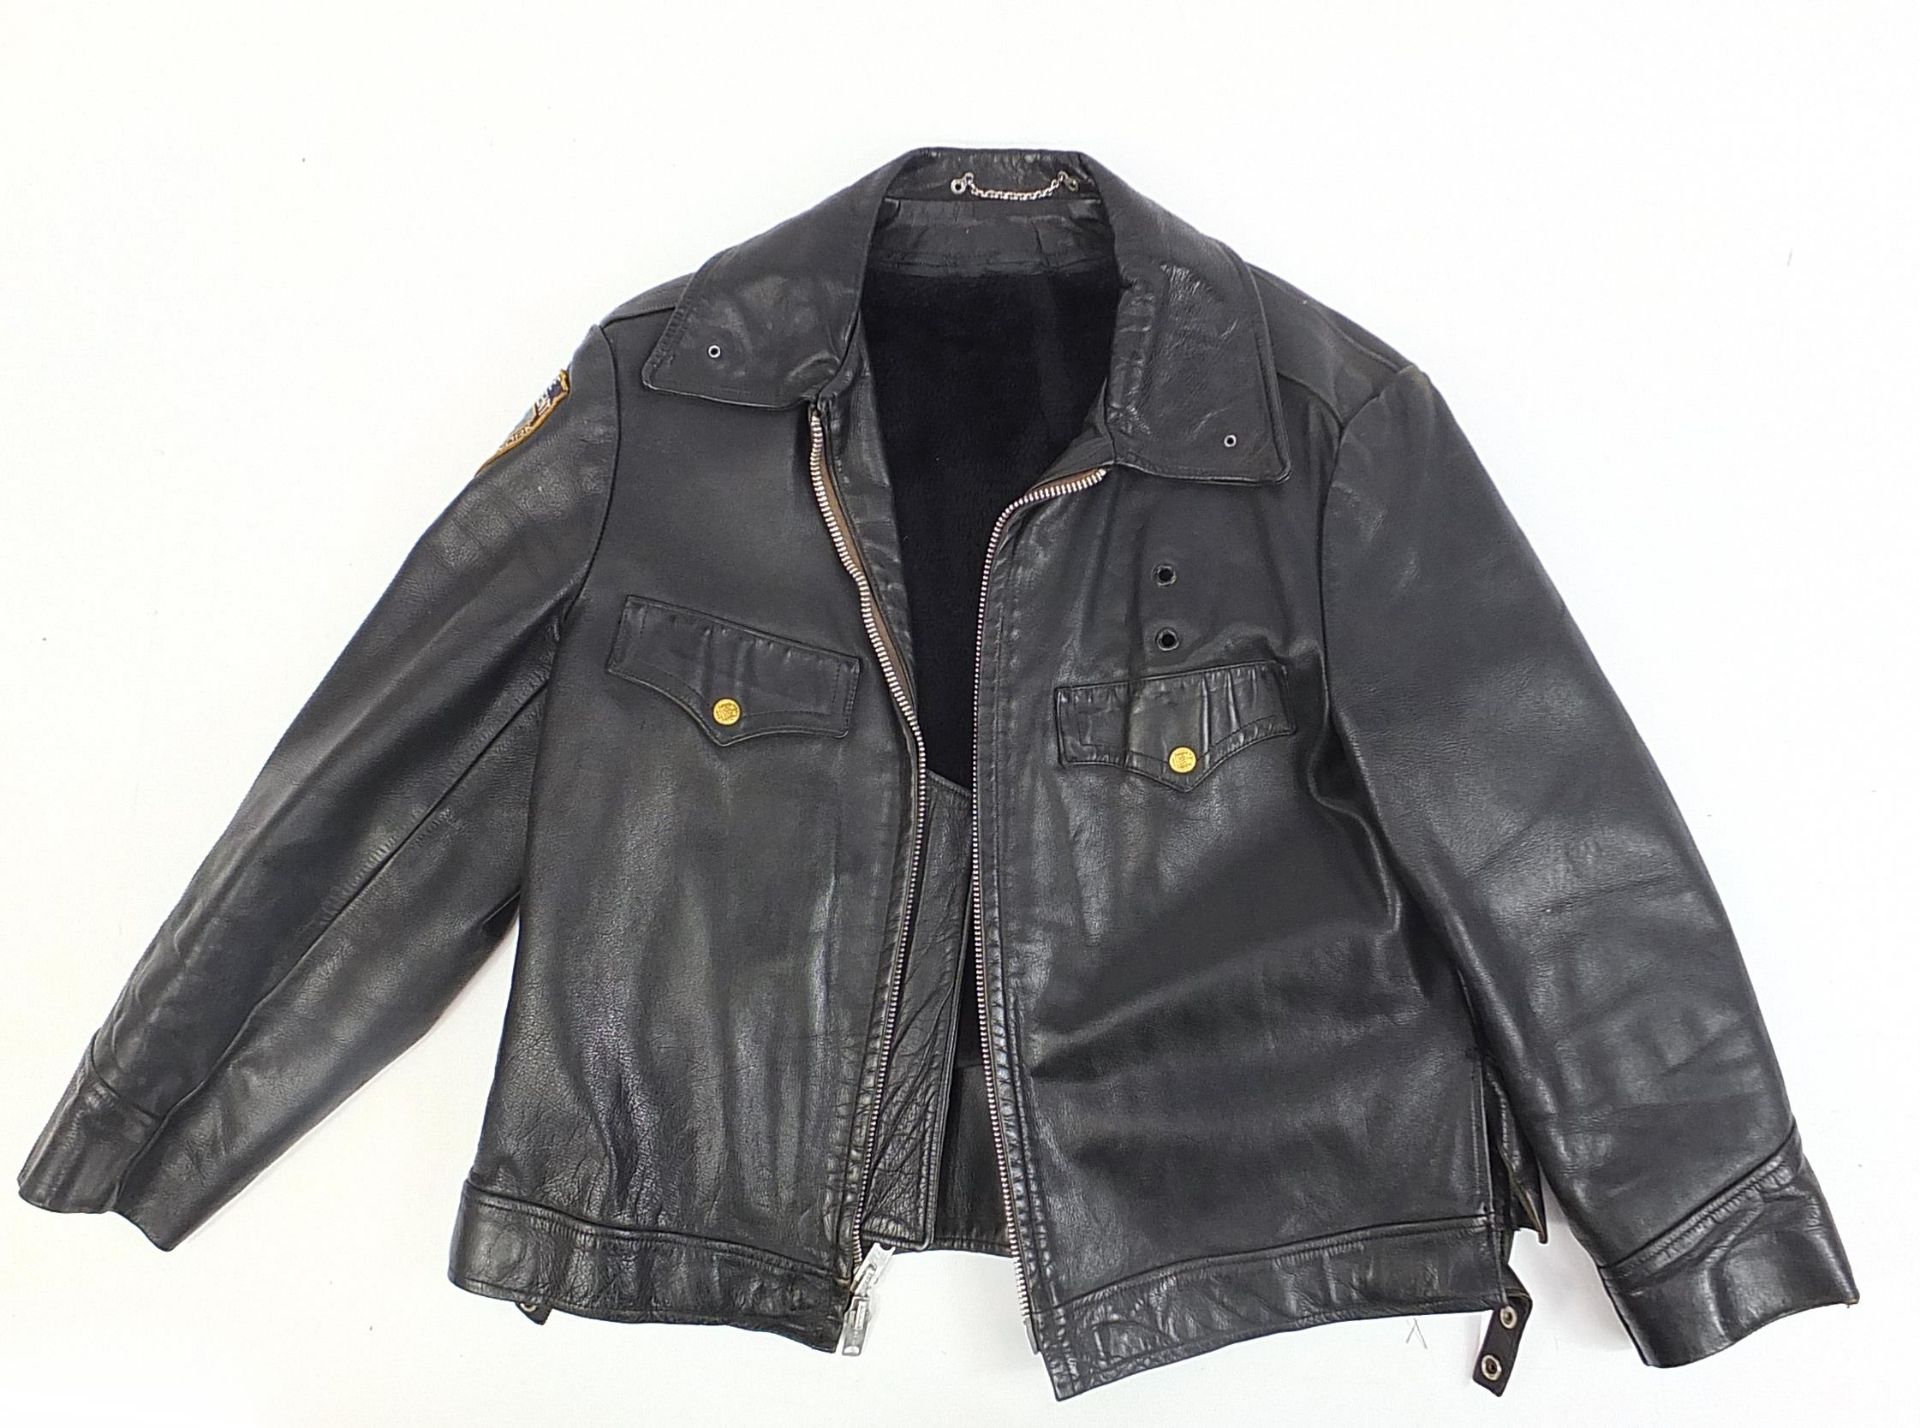 Vintage NYPD Eisenhower leather jacket